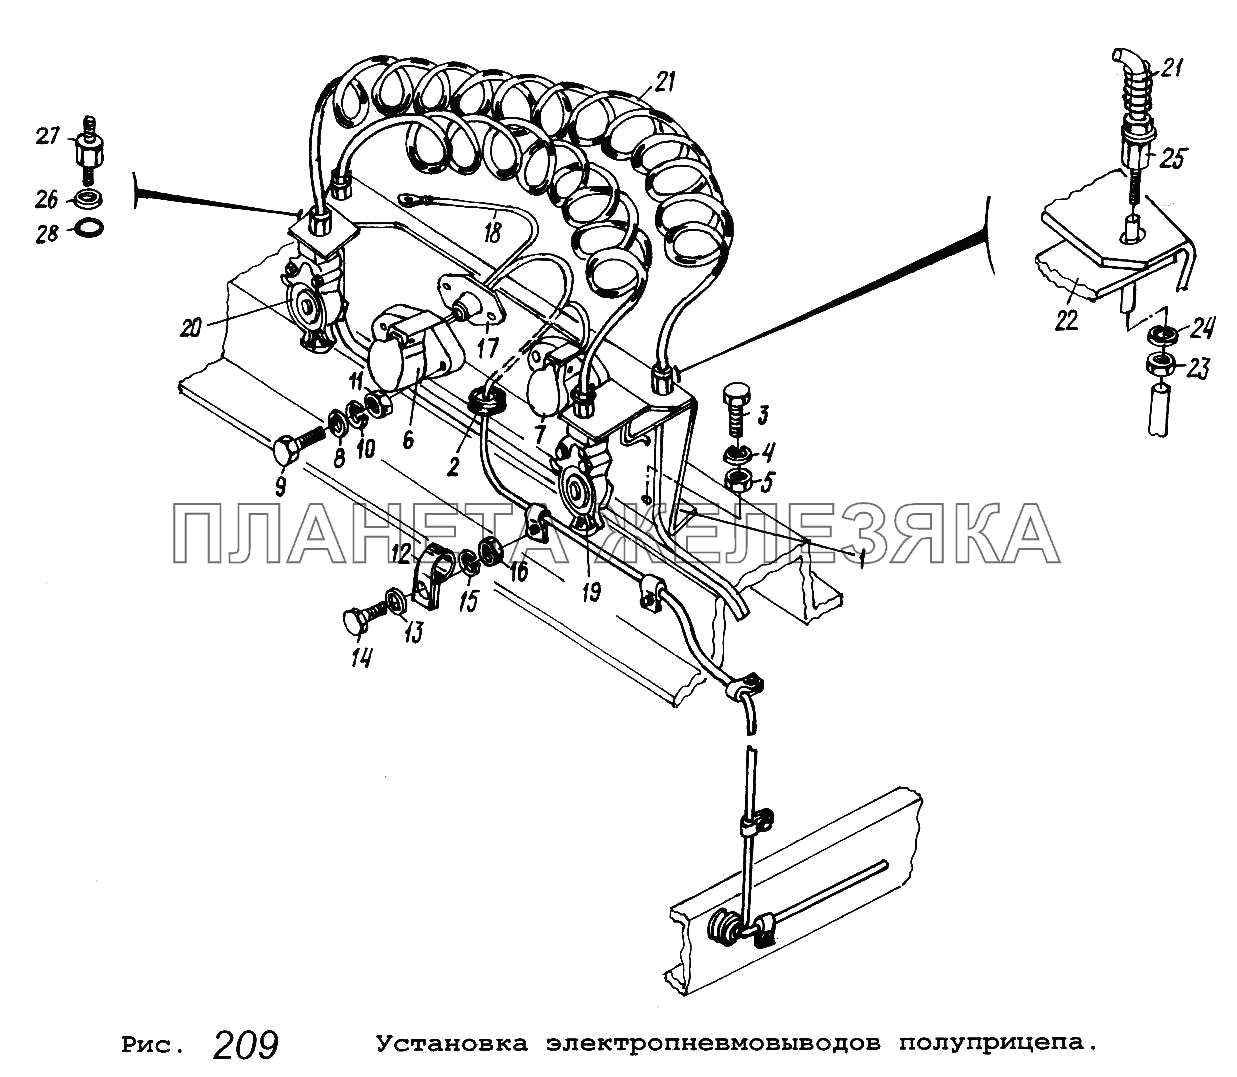 Установка электропневмовыводов полуприцепа МАЗ-64229